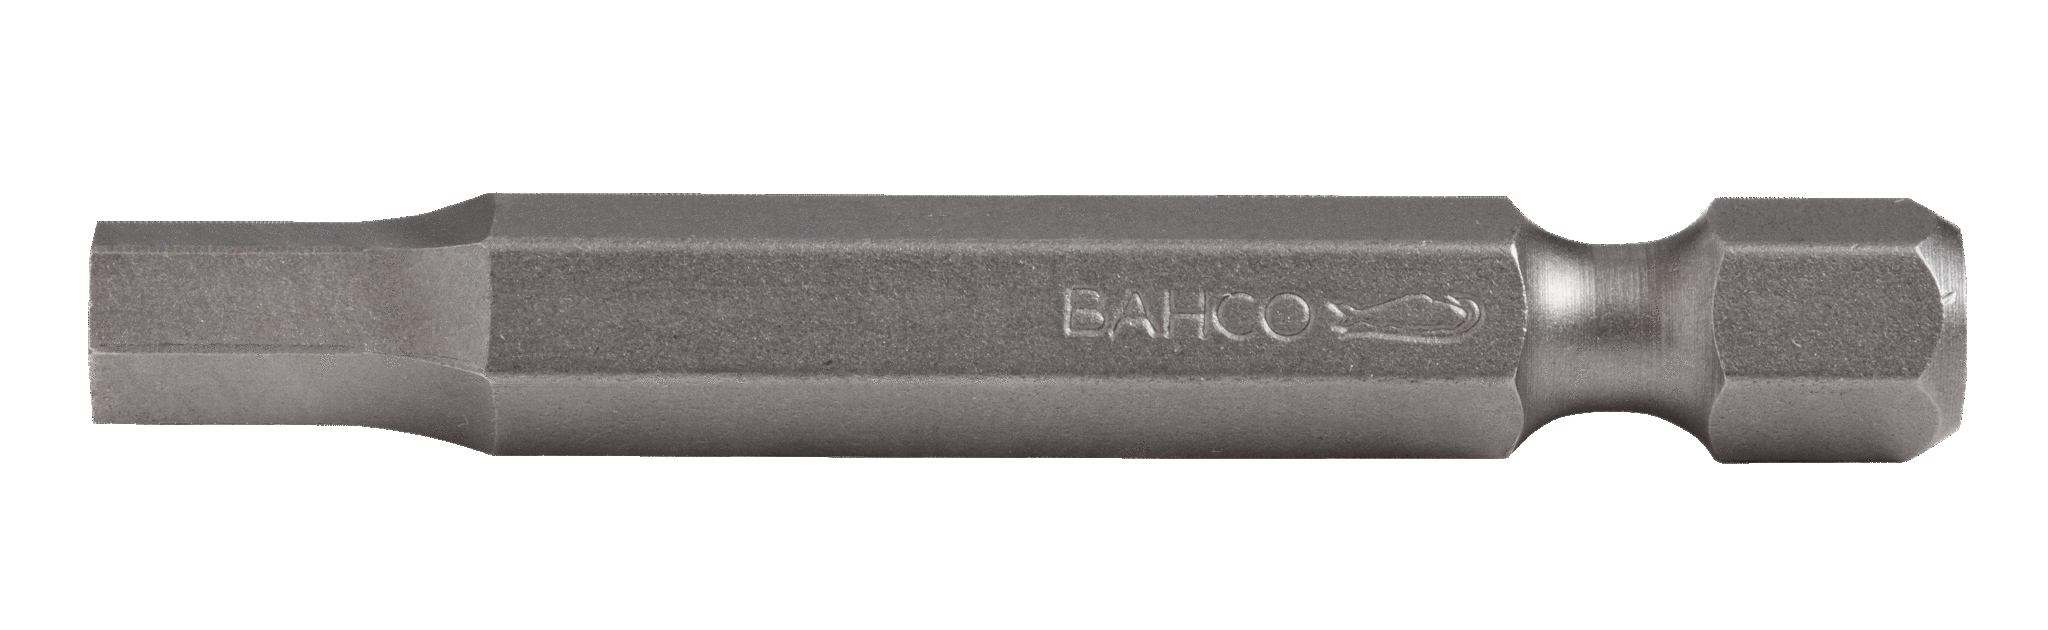 картинка Стандартные биты для отверток под винты с шестигранной головкой, дюймовые размеры, 50 мм BAHCO 59S/50H7/32 от магазина "Элит-инструмент"